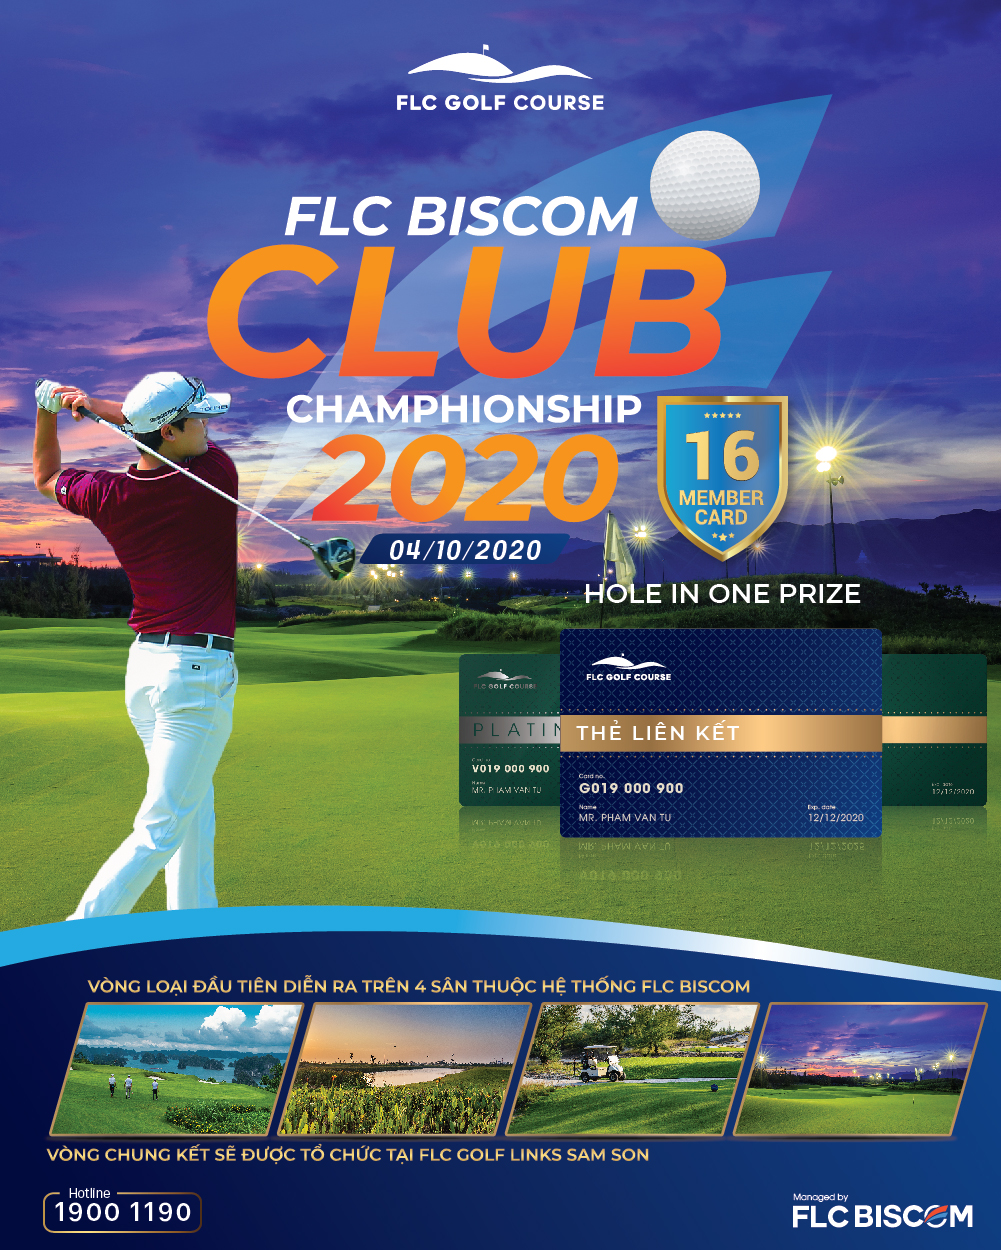 FLC Biscom Club Championship sẽ khởi tranh đồng loạt trên 4 sân vào tháng 10